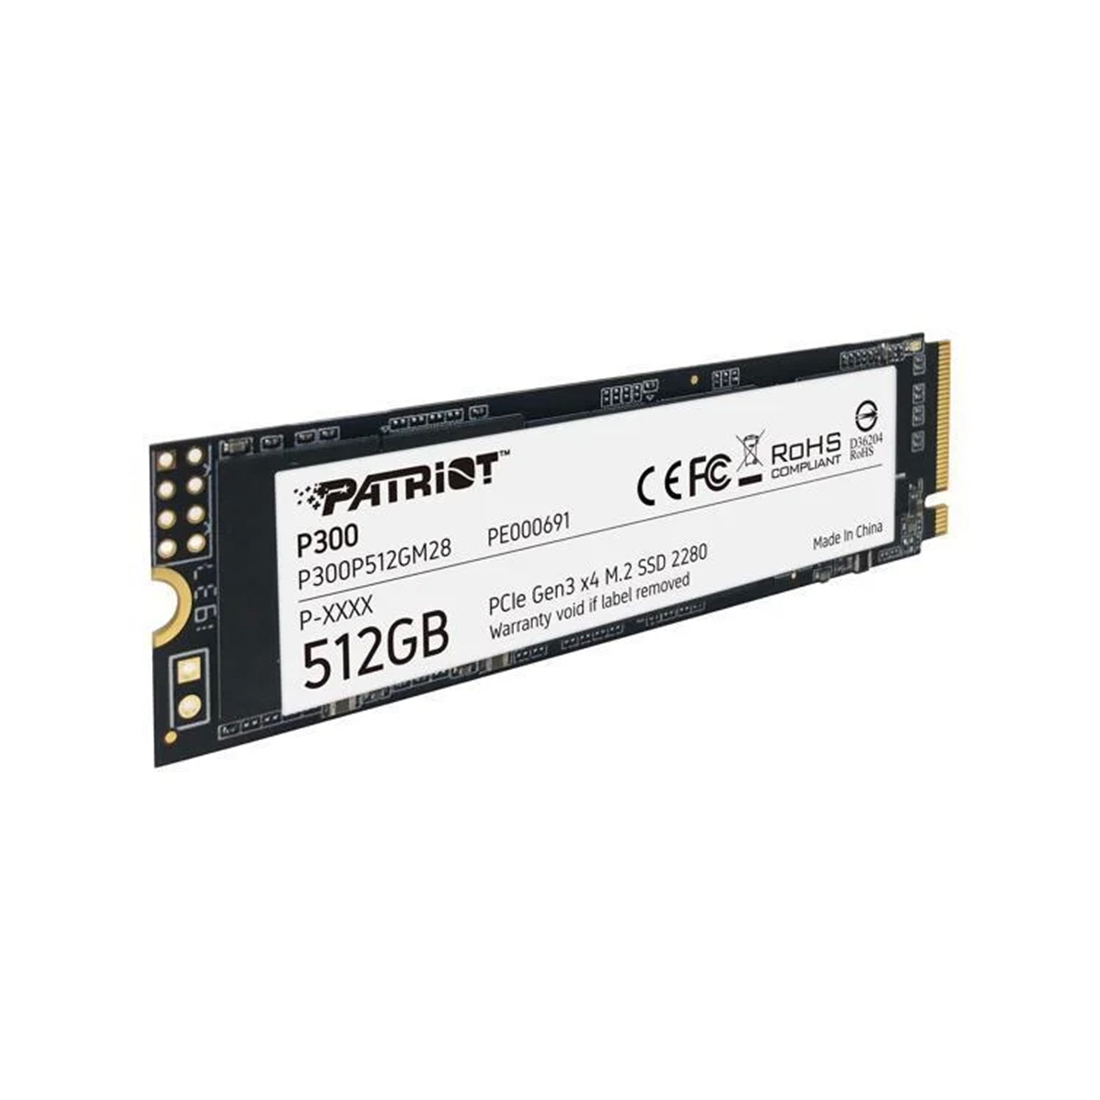 Твердотельный накопитель SSD, Patriot, P300 PP300P512GM28, 512 GB, M.2 NVMe PCIe 3.0x4, 1700/1200 Мб